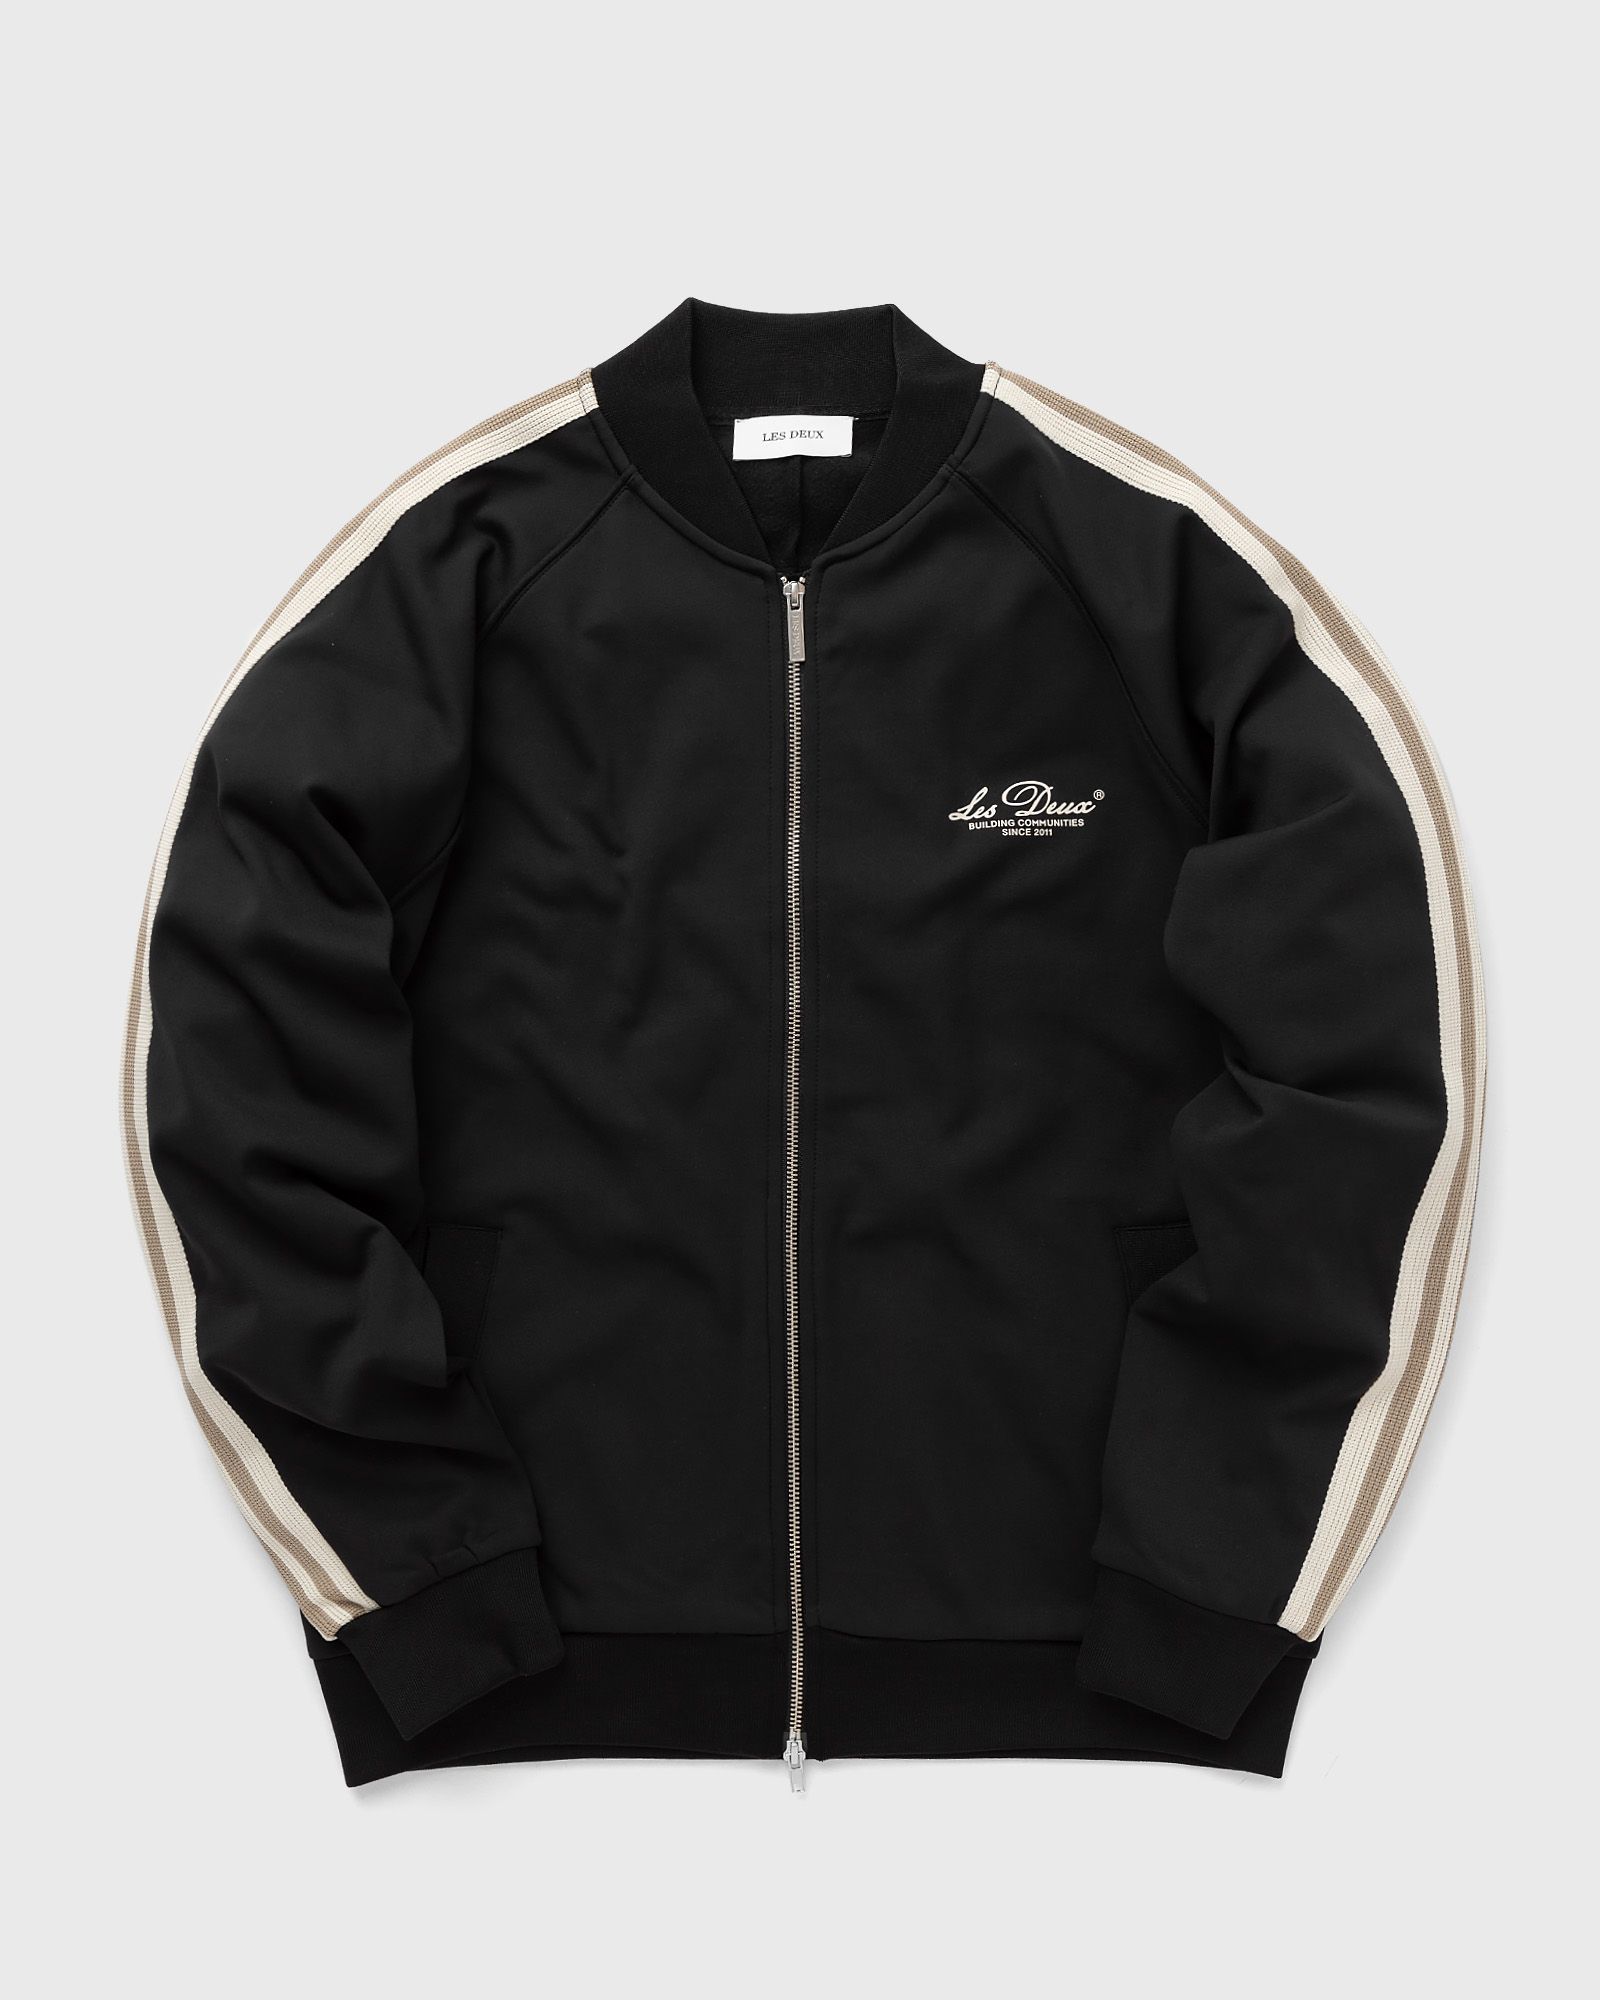 Les Deux - sterling track jacket men track jackets black|beige in größe:xl